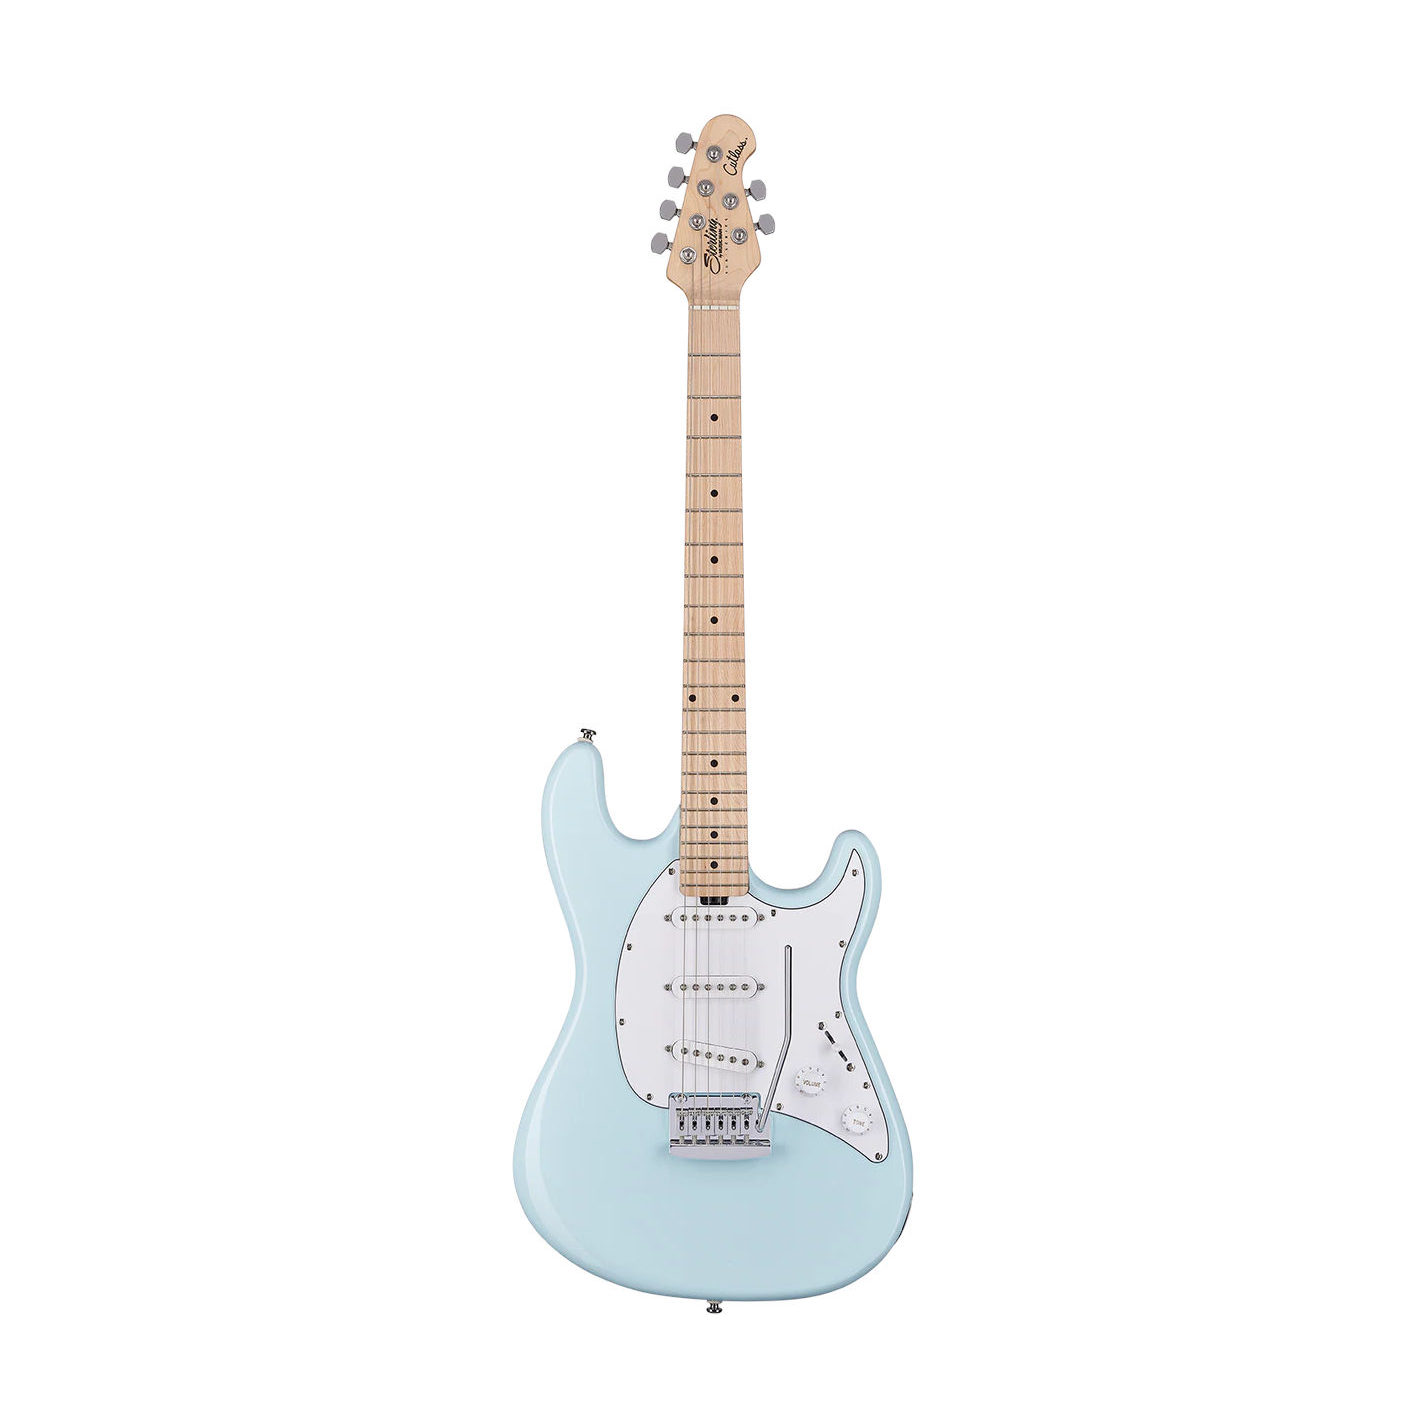 Sterling by Music Man Cutlass CT30SSS Guitar - Daphne Blue